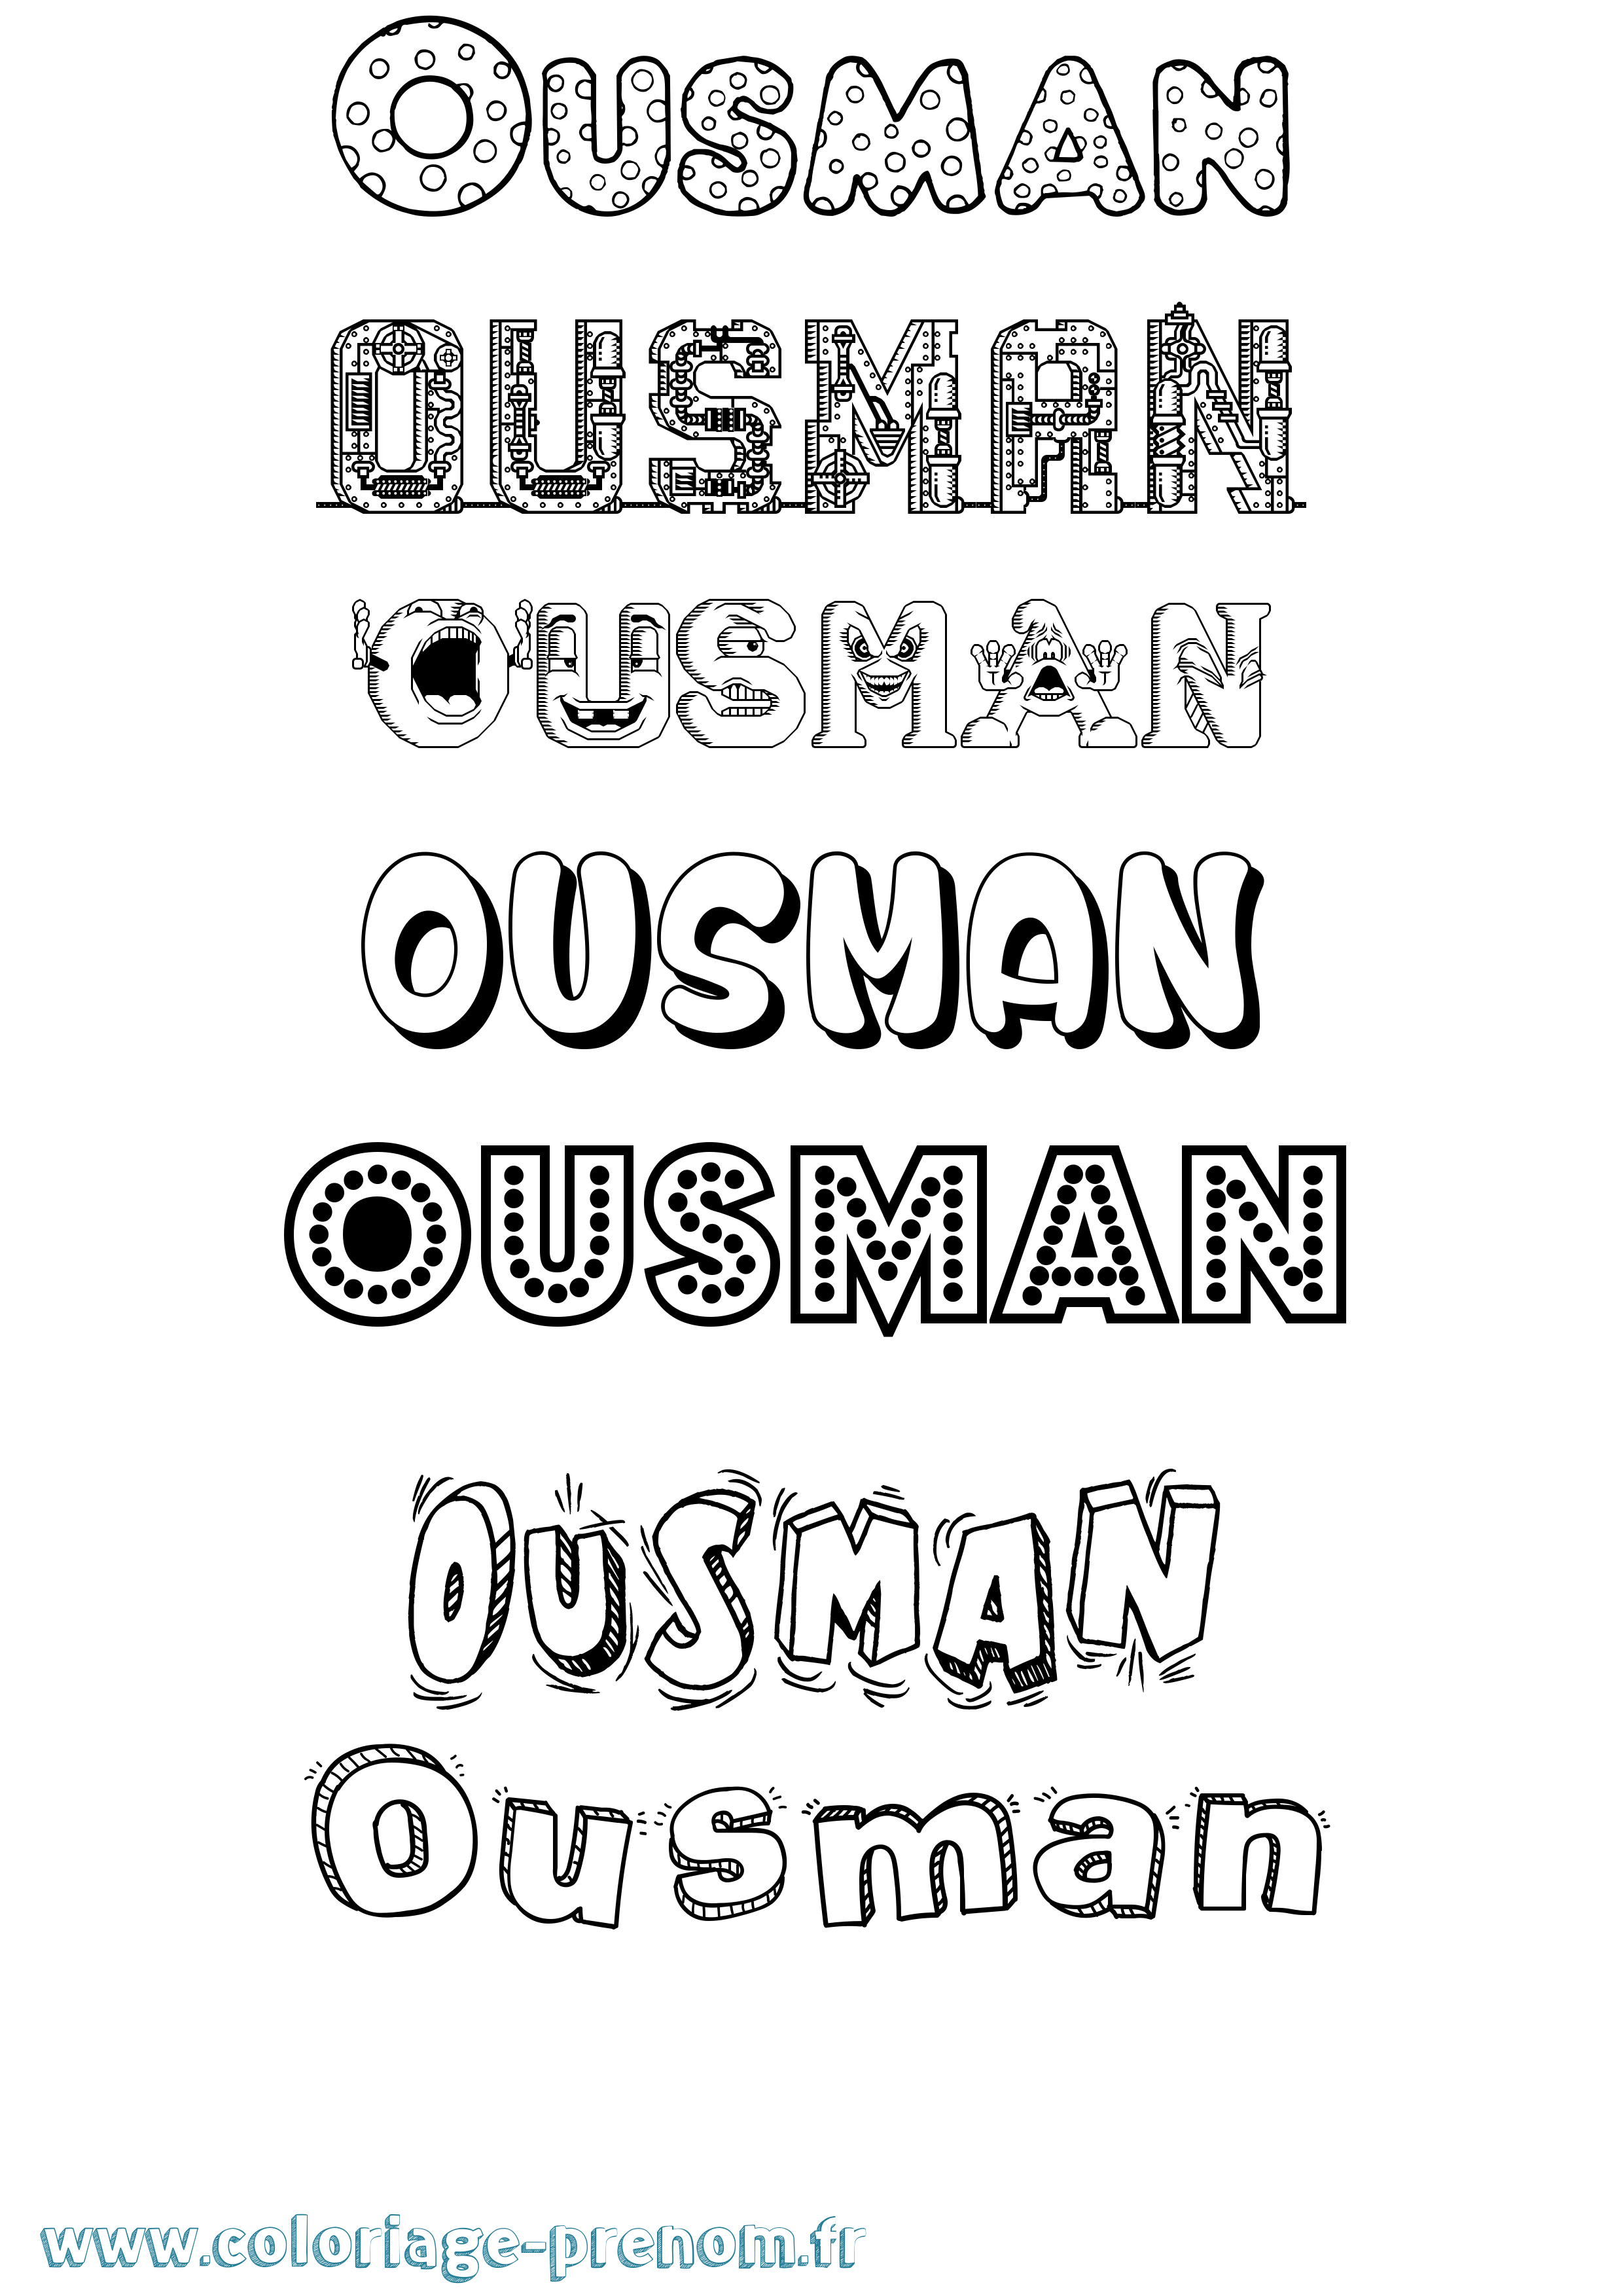 Coloriage prénom Ousman Fun